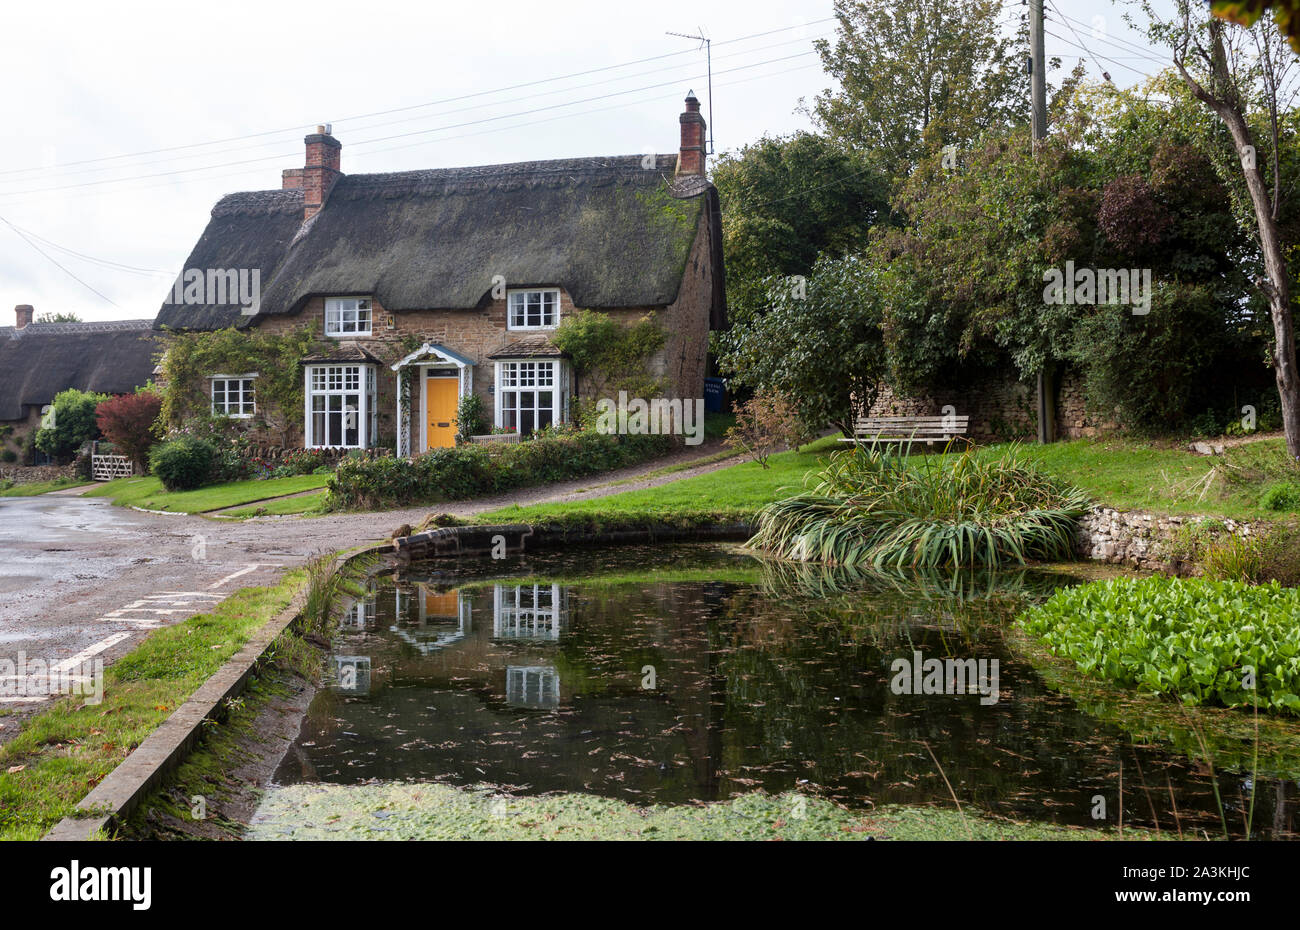 Reetdachhaus und Ententeich, Sibford Gower, Oxfordshire, England, Großbritannien Stockfoto